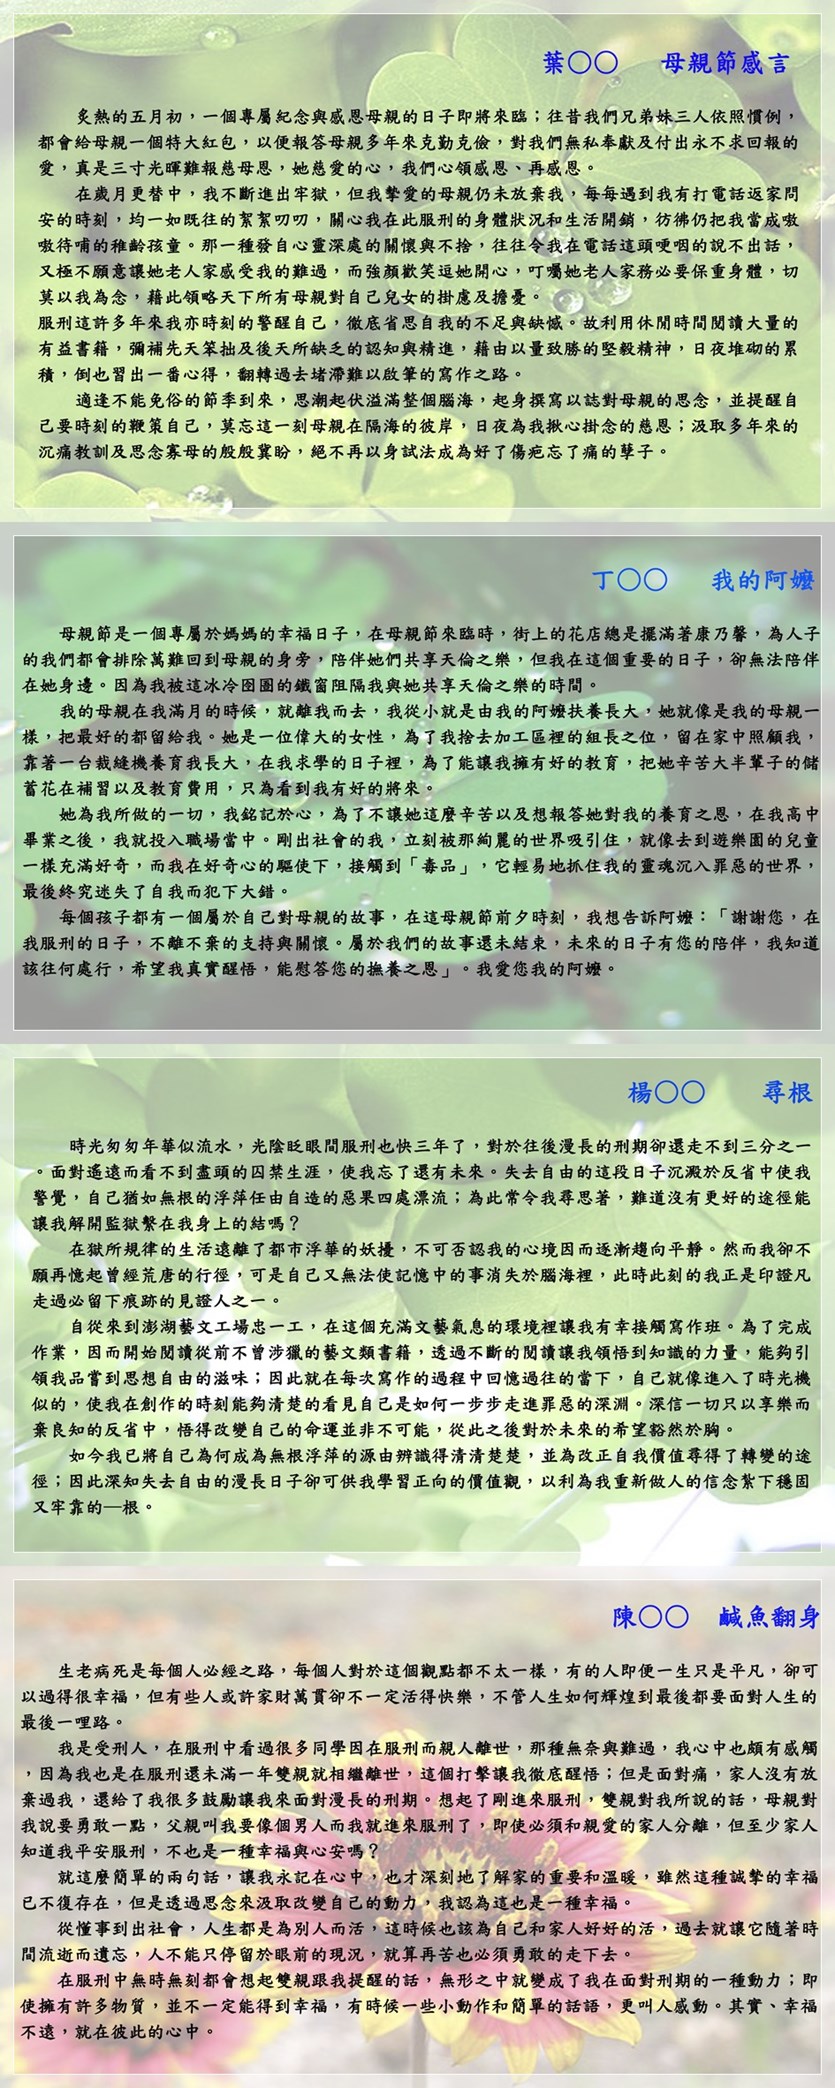 澎鼎雙月刊電子版第216期